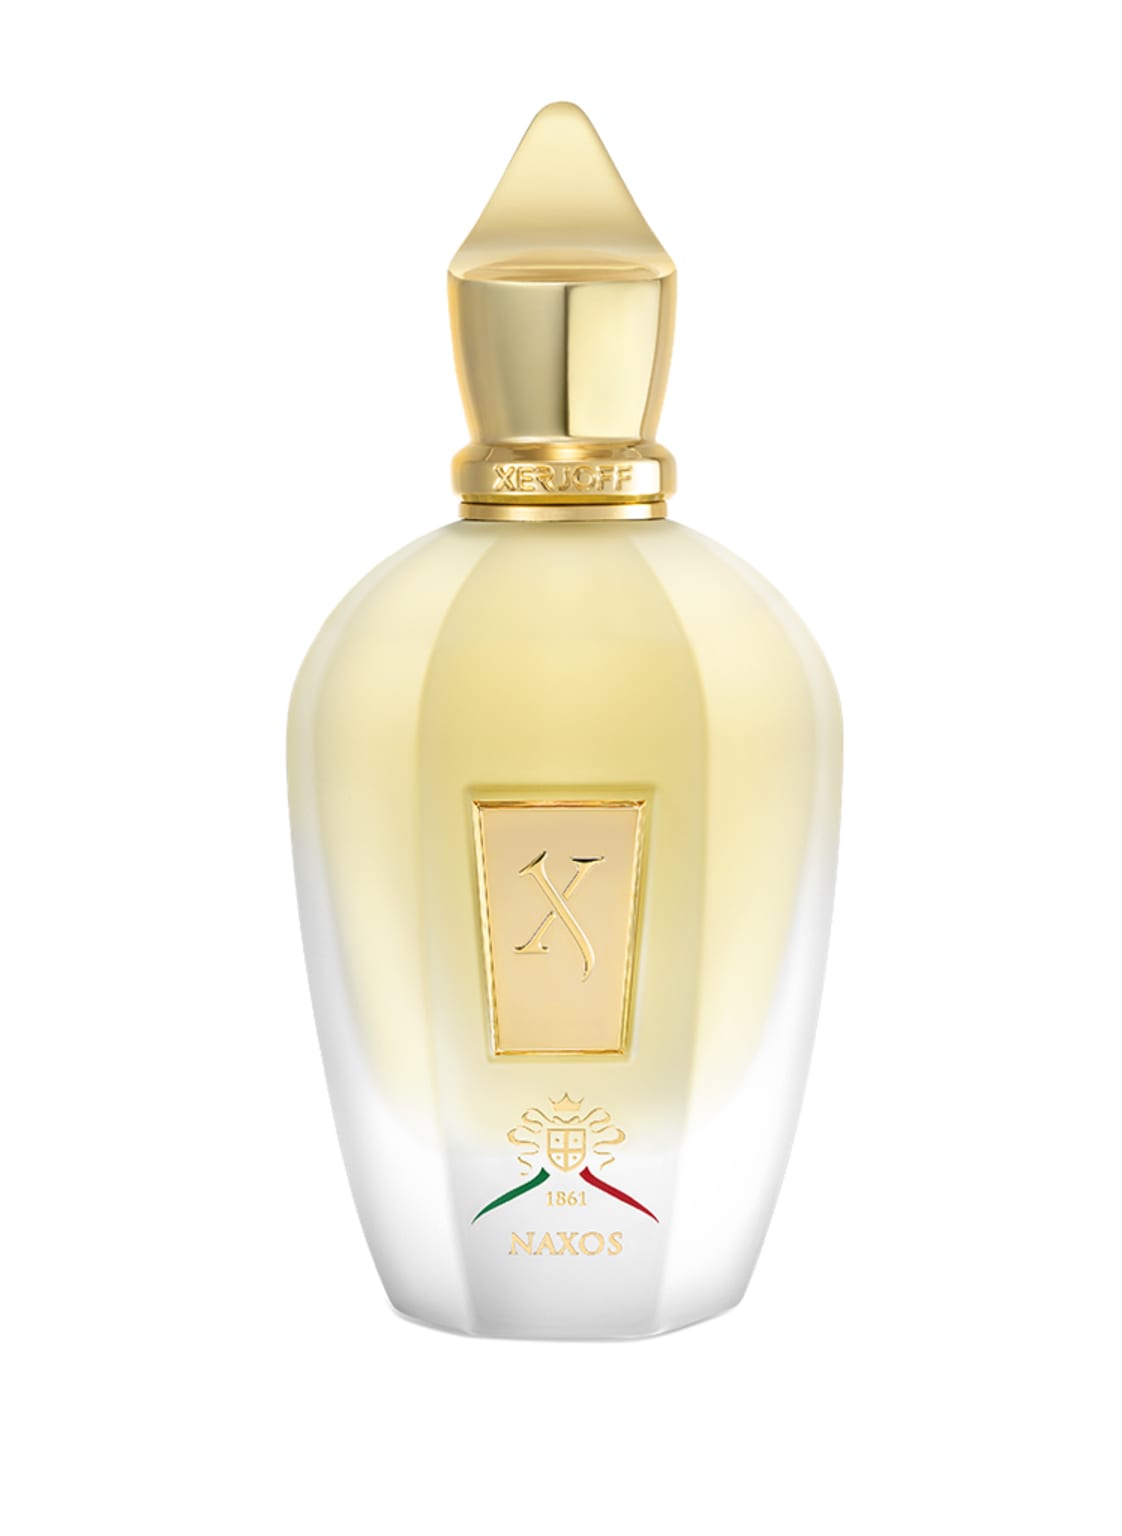 Xerjoff Naxos Eau de Parfum 100 ml von XERJOFF